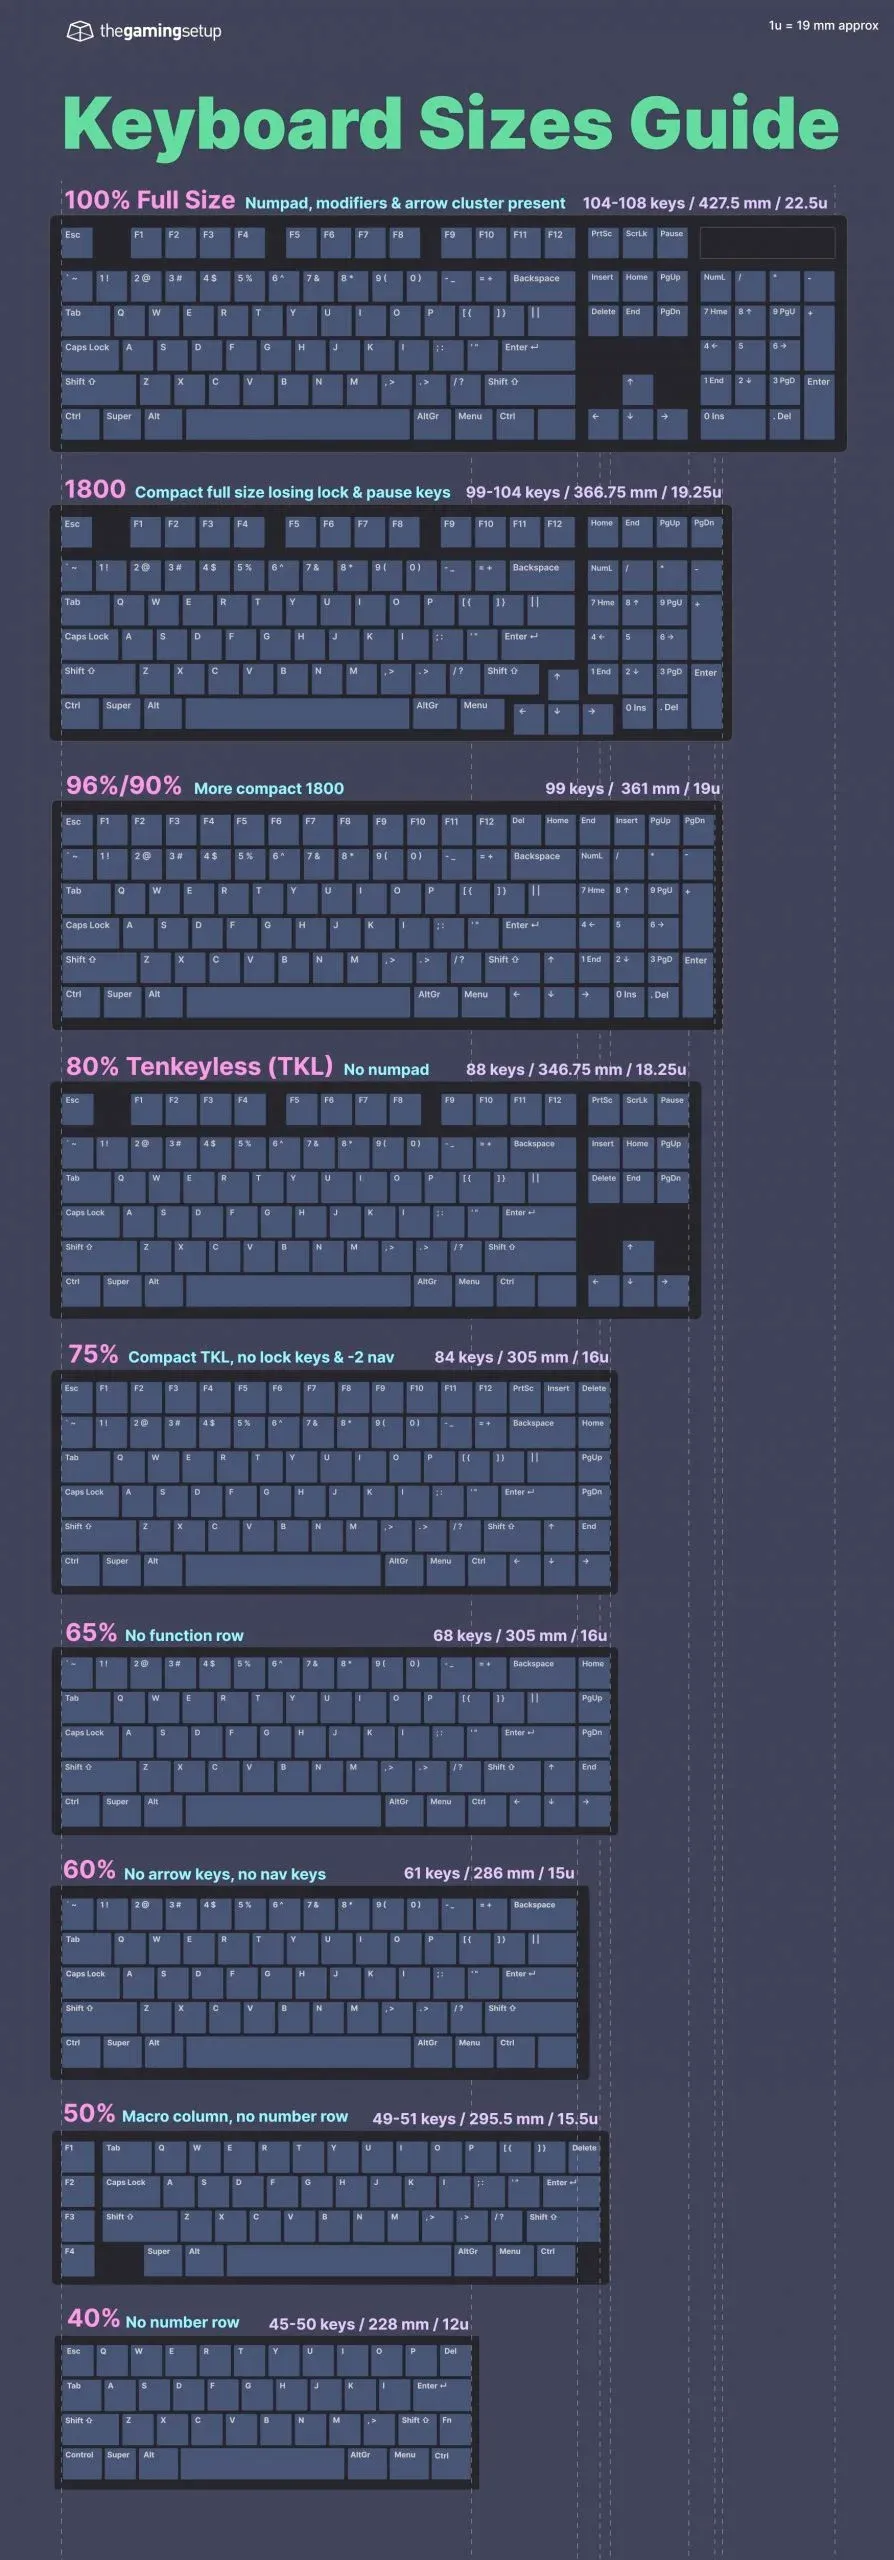 Keyboards sizes